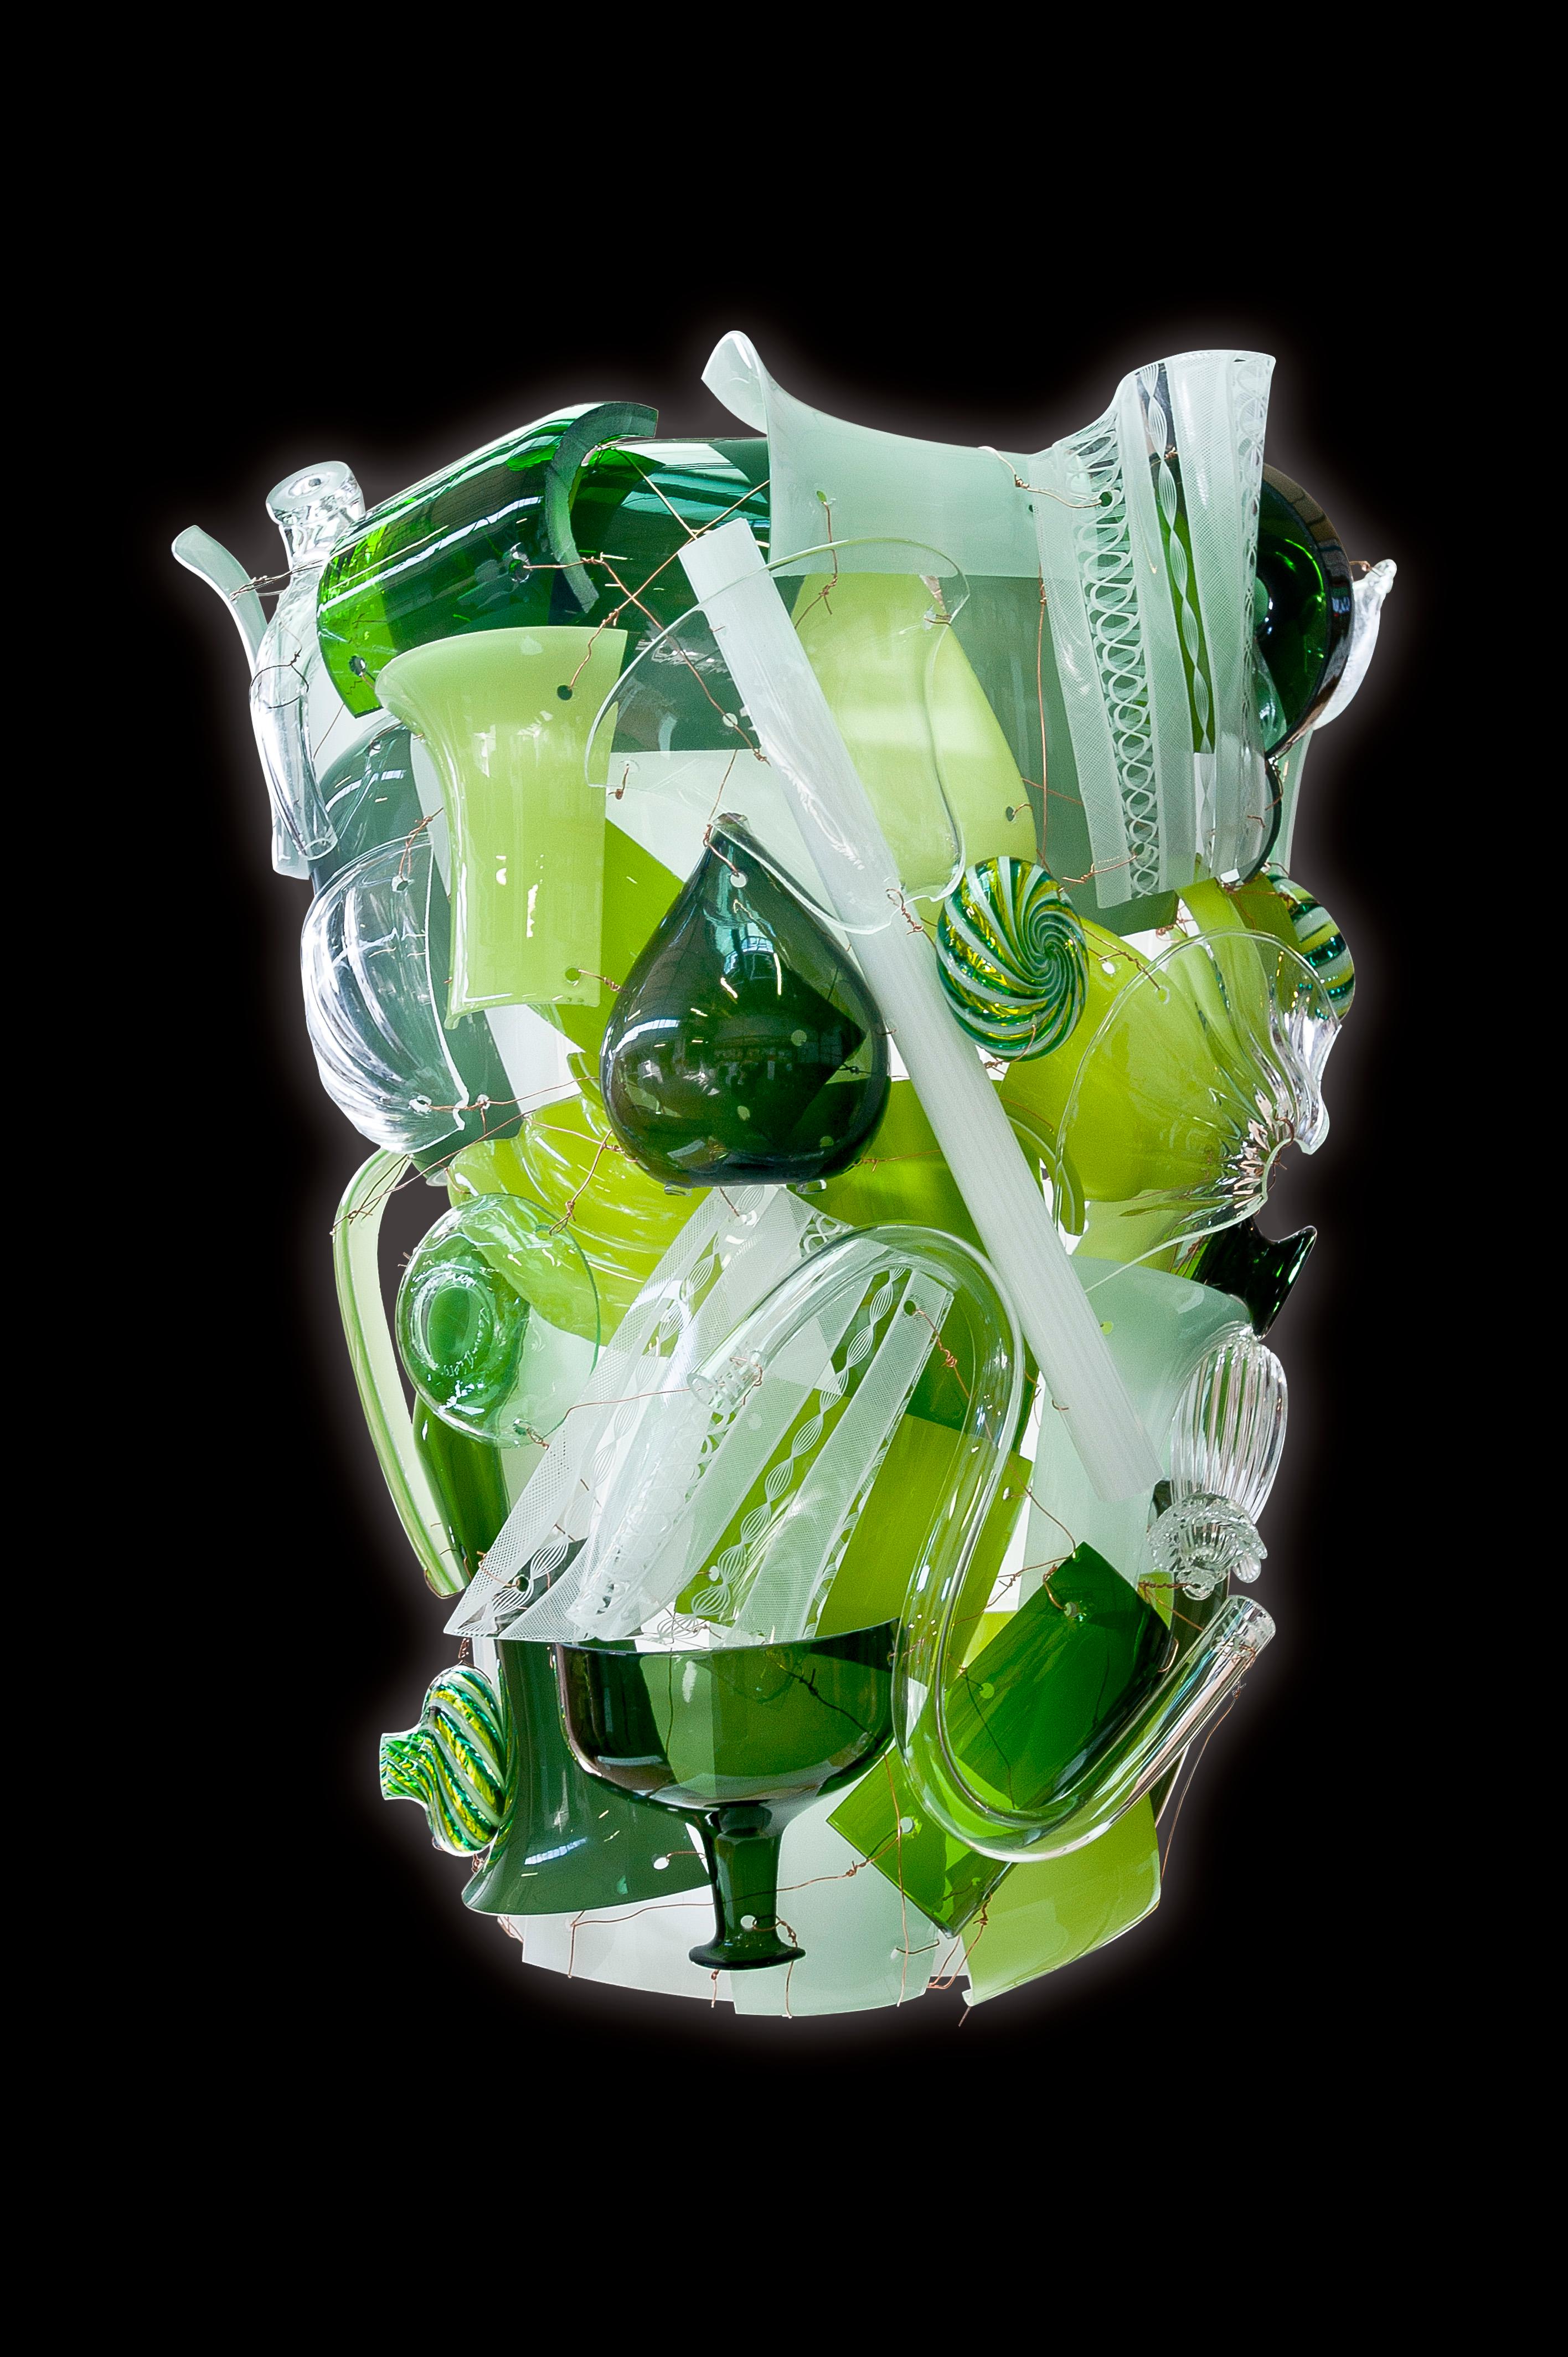 Die riesige Wandleuchte Fragments applique, entworfen von Fernando & Humberto Campana und hergestellt von Venini, besteht aus Resten und Stücken von Venini-Glas. Jede Lampe ist ein einzigartiges Kunstwerk. Nur für den Innenbereich.

Abmessungen: B